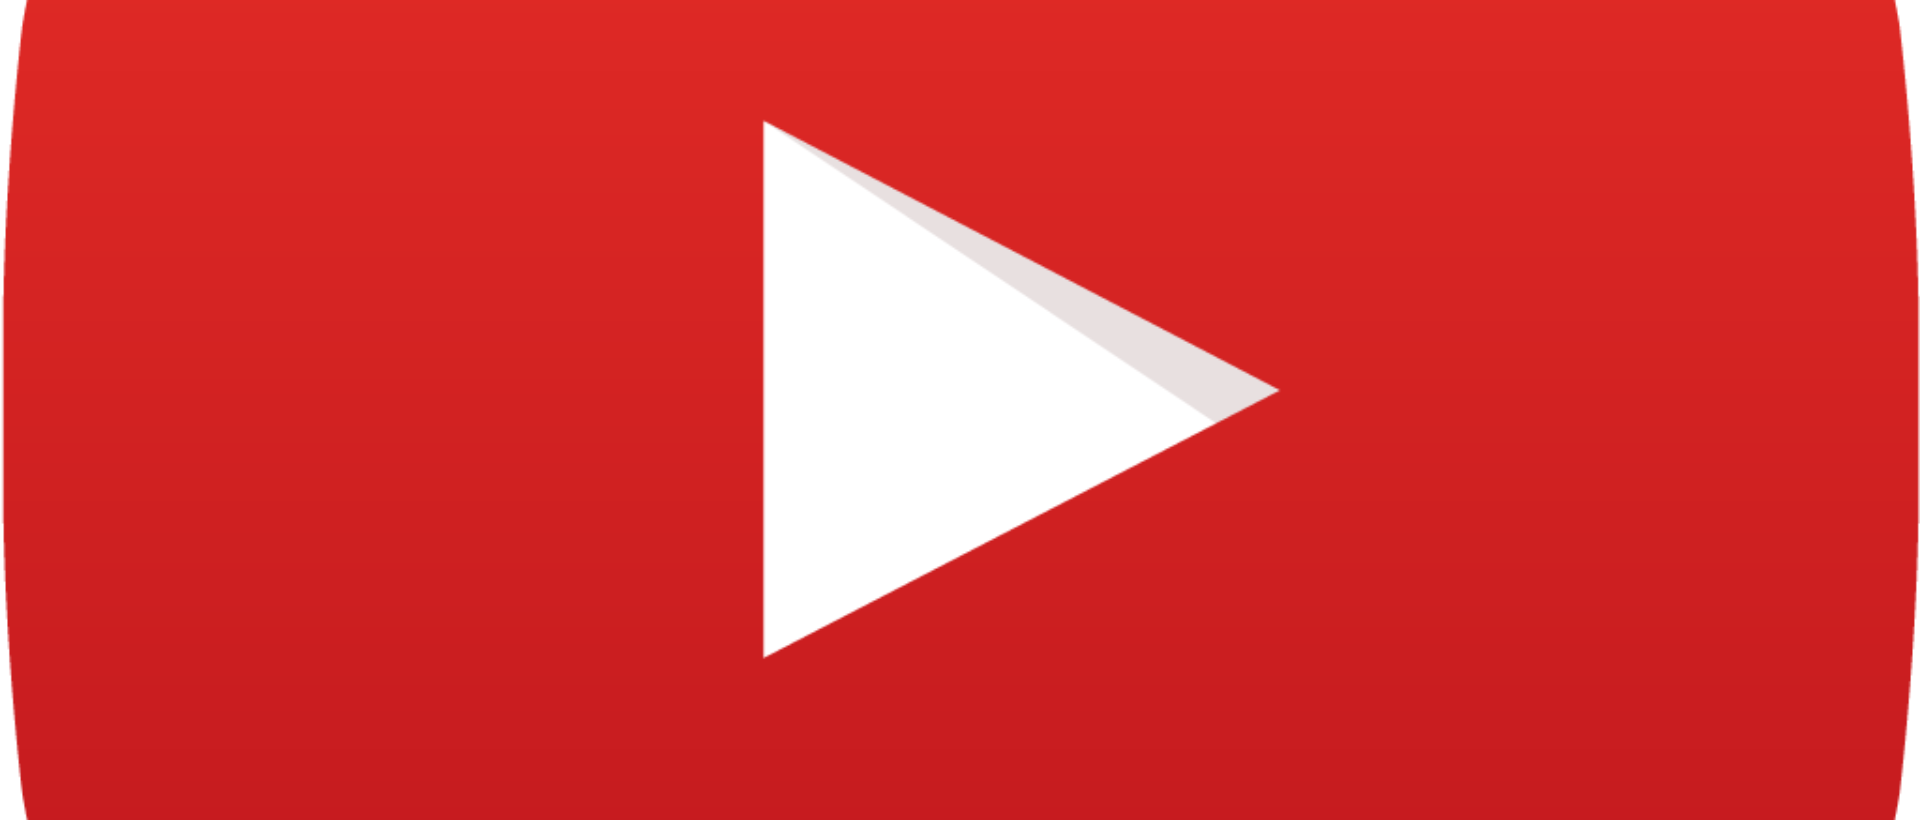 Die optimalen Einstellungen für YouTube Videos